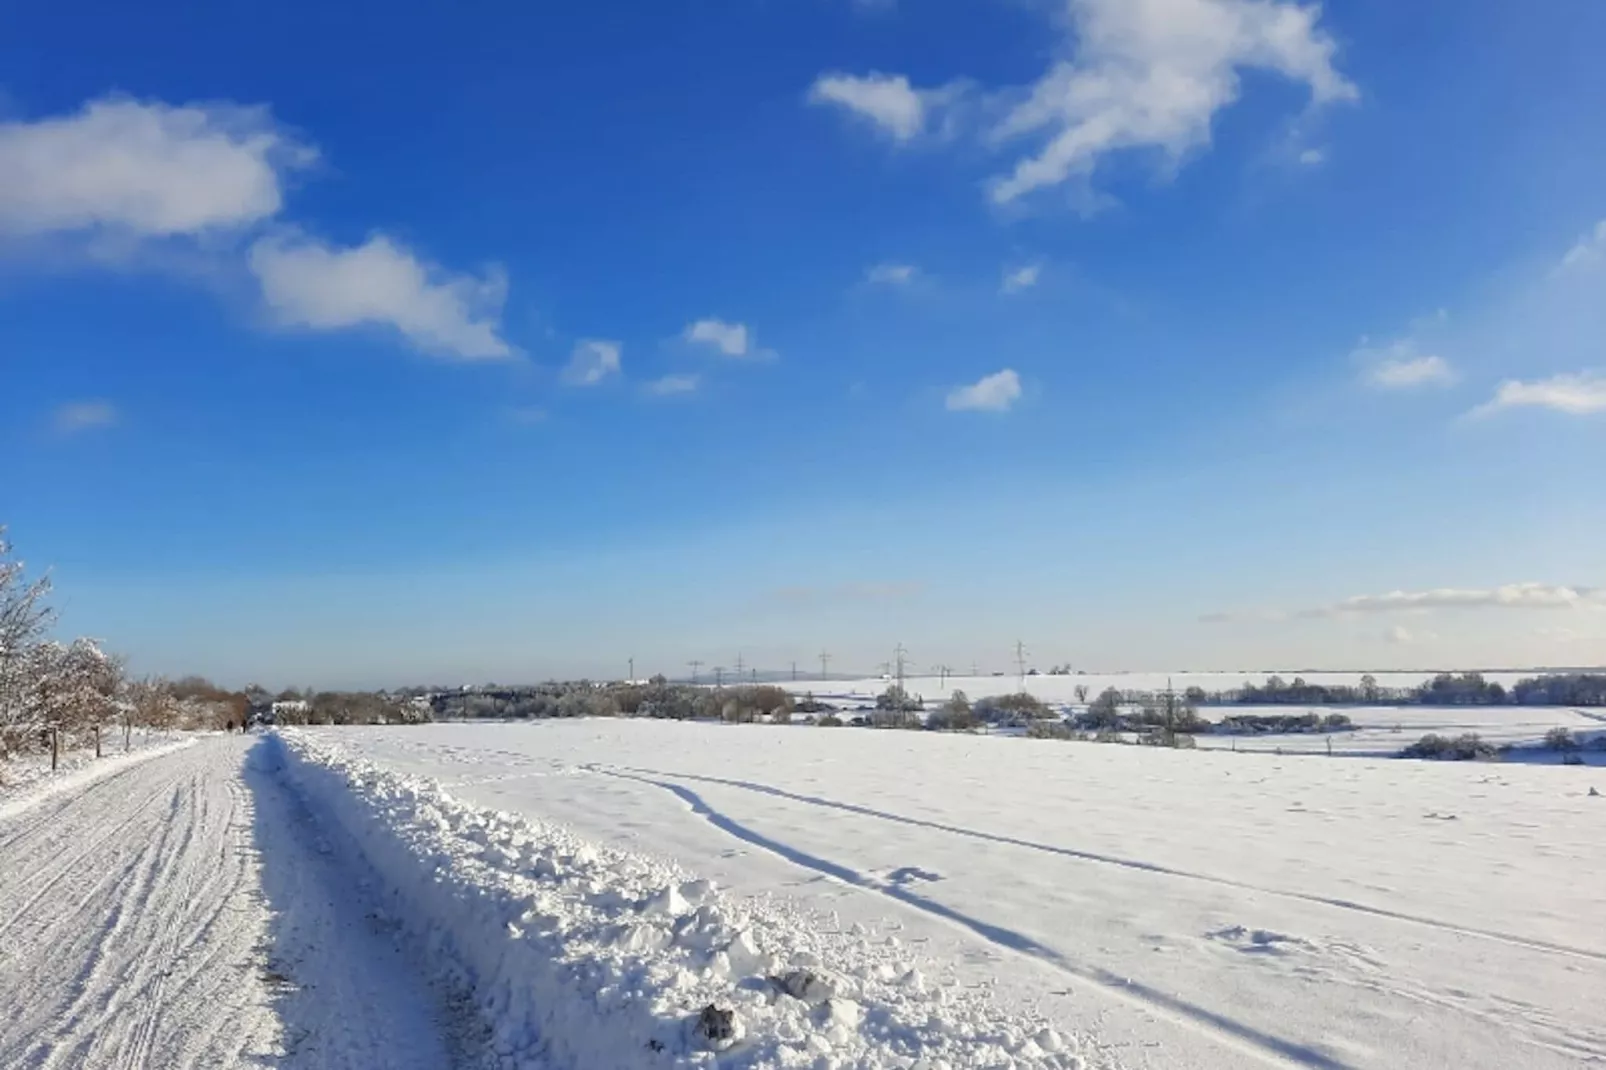 Harzliebe-Gebied winter 5km